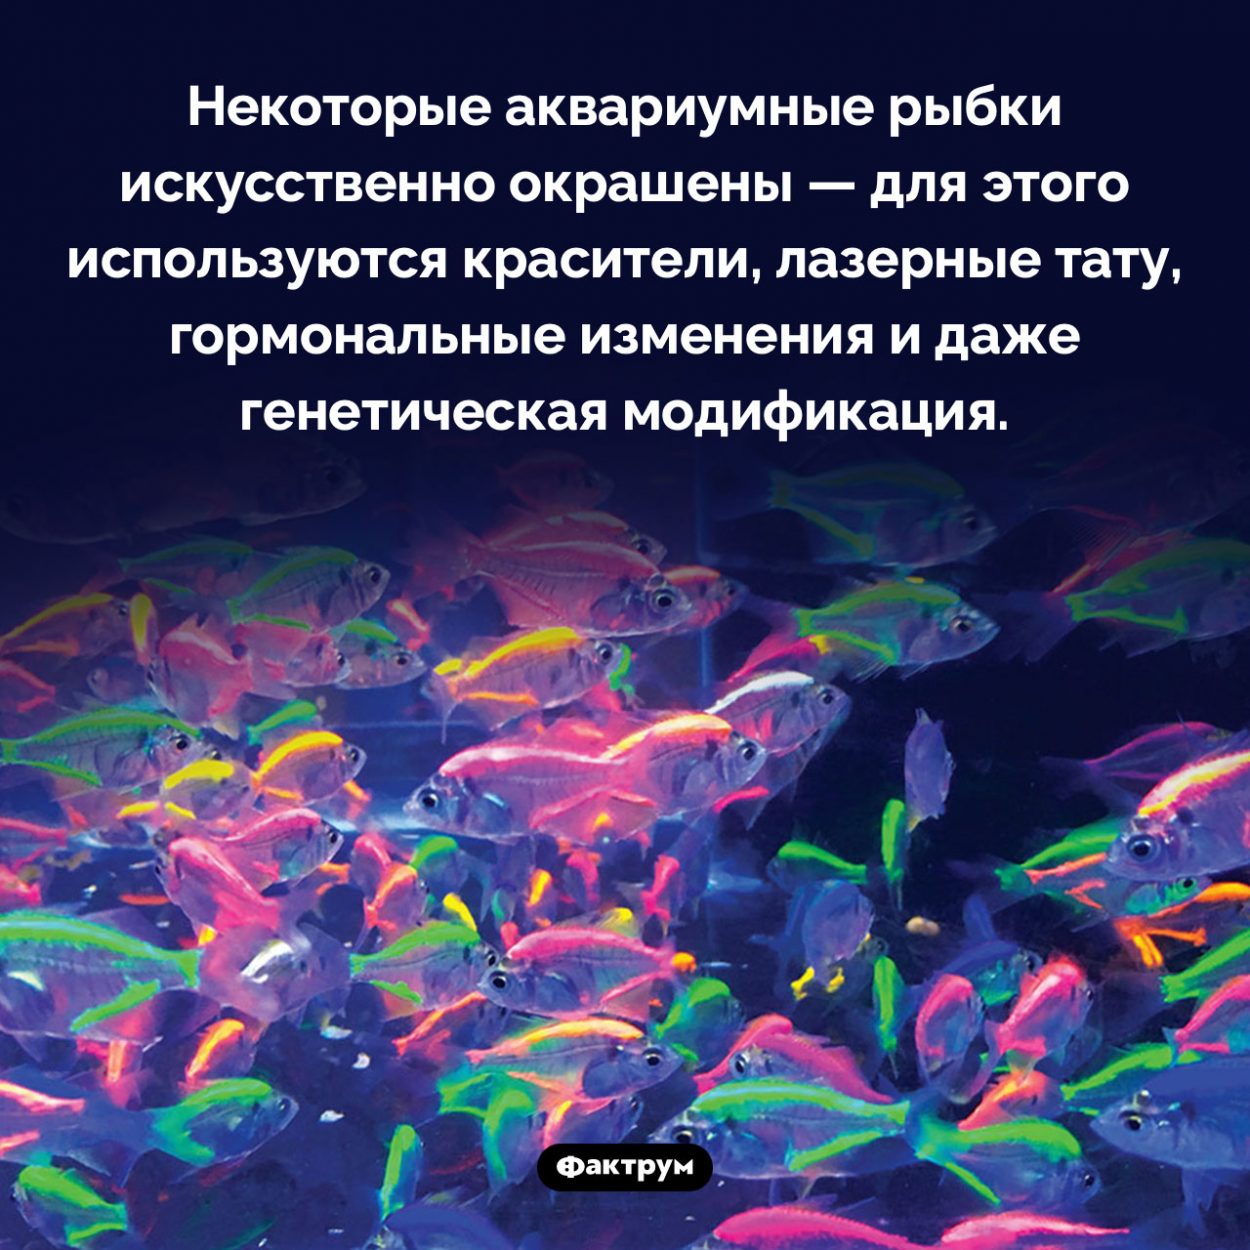 Почему аквариумные рыбки такие разноцветные. Некоторые аквариумные рыбки искусственно окрашены — для этого используются красители, лазерные тату, гормональные изменения и даже генетическая модификация.